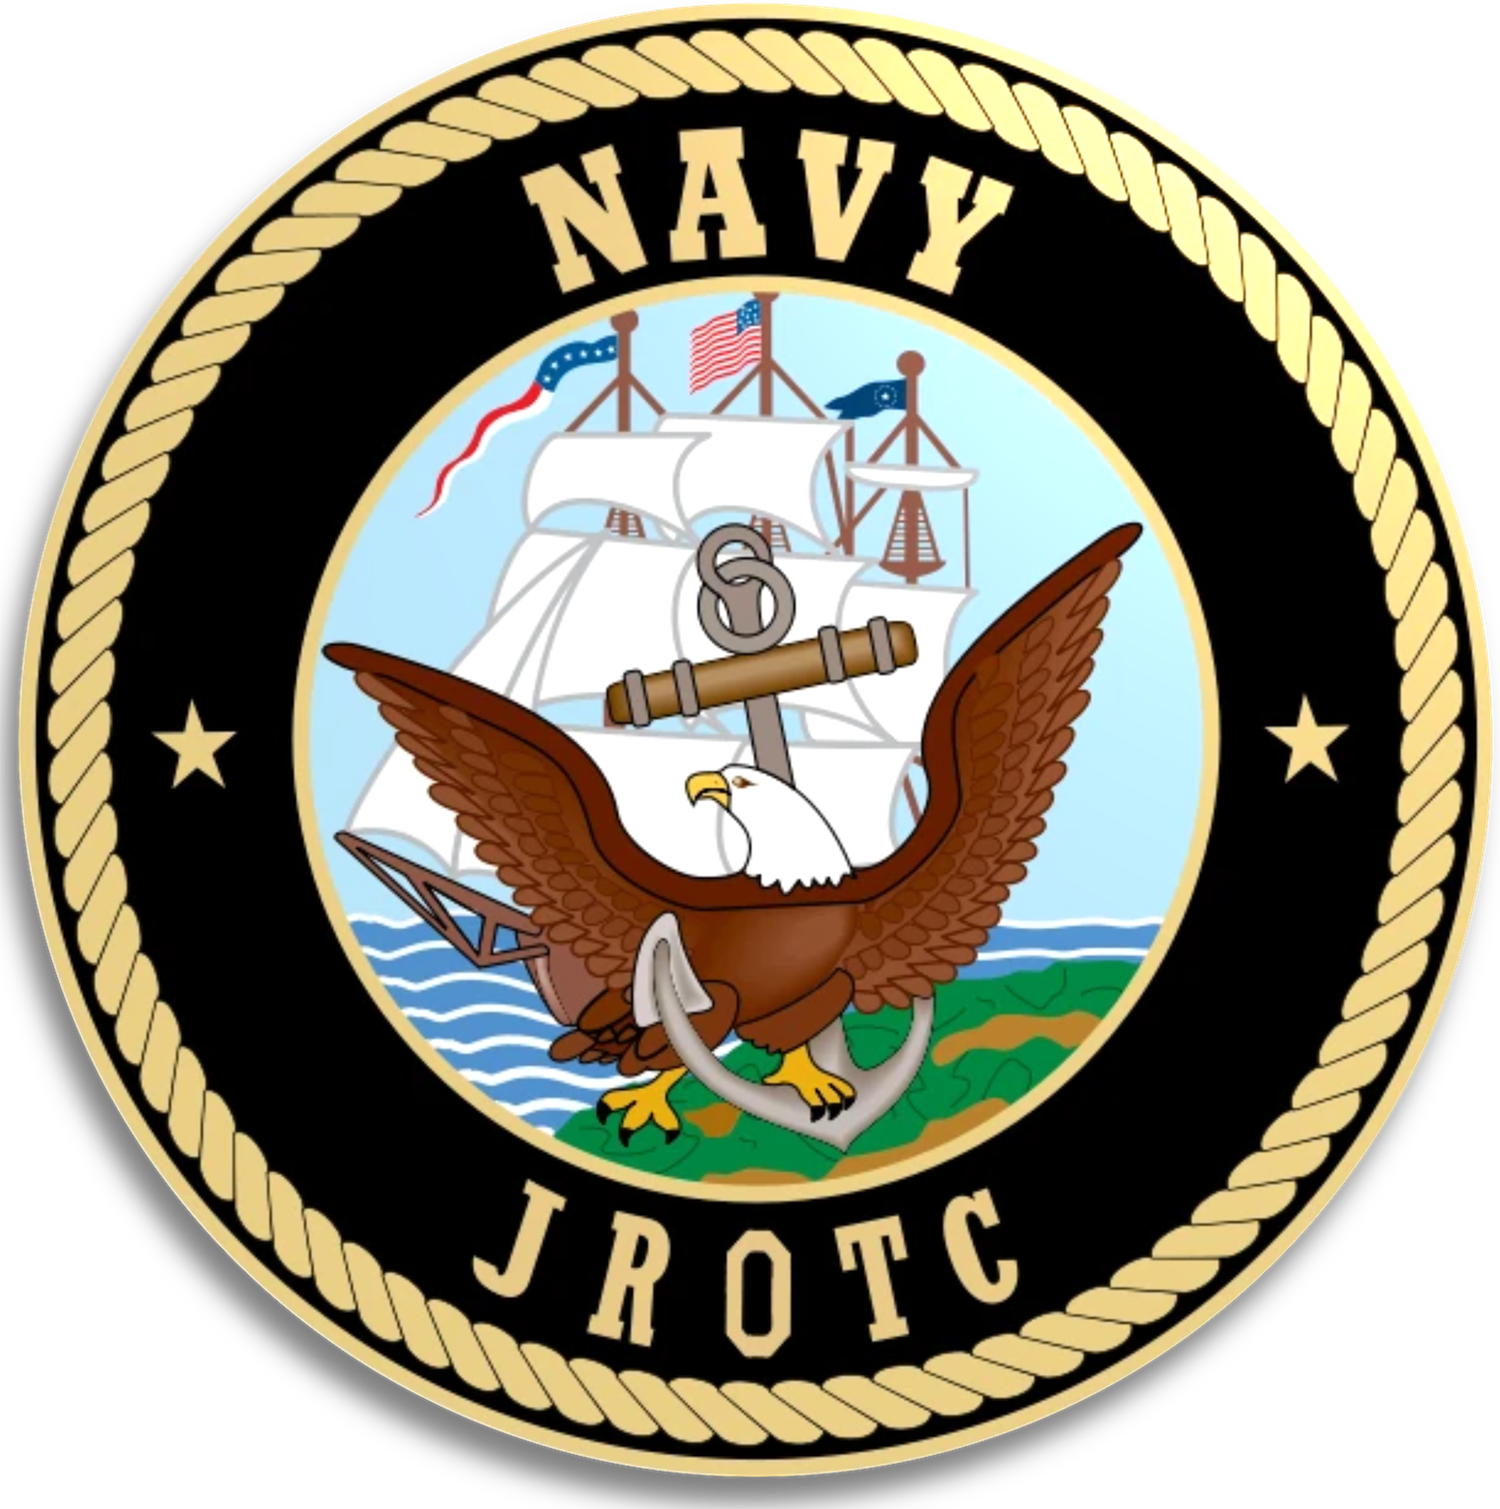 Navy JROTC logo